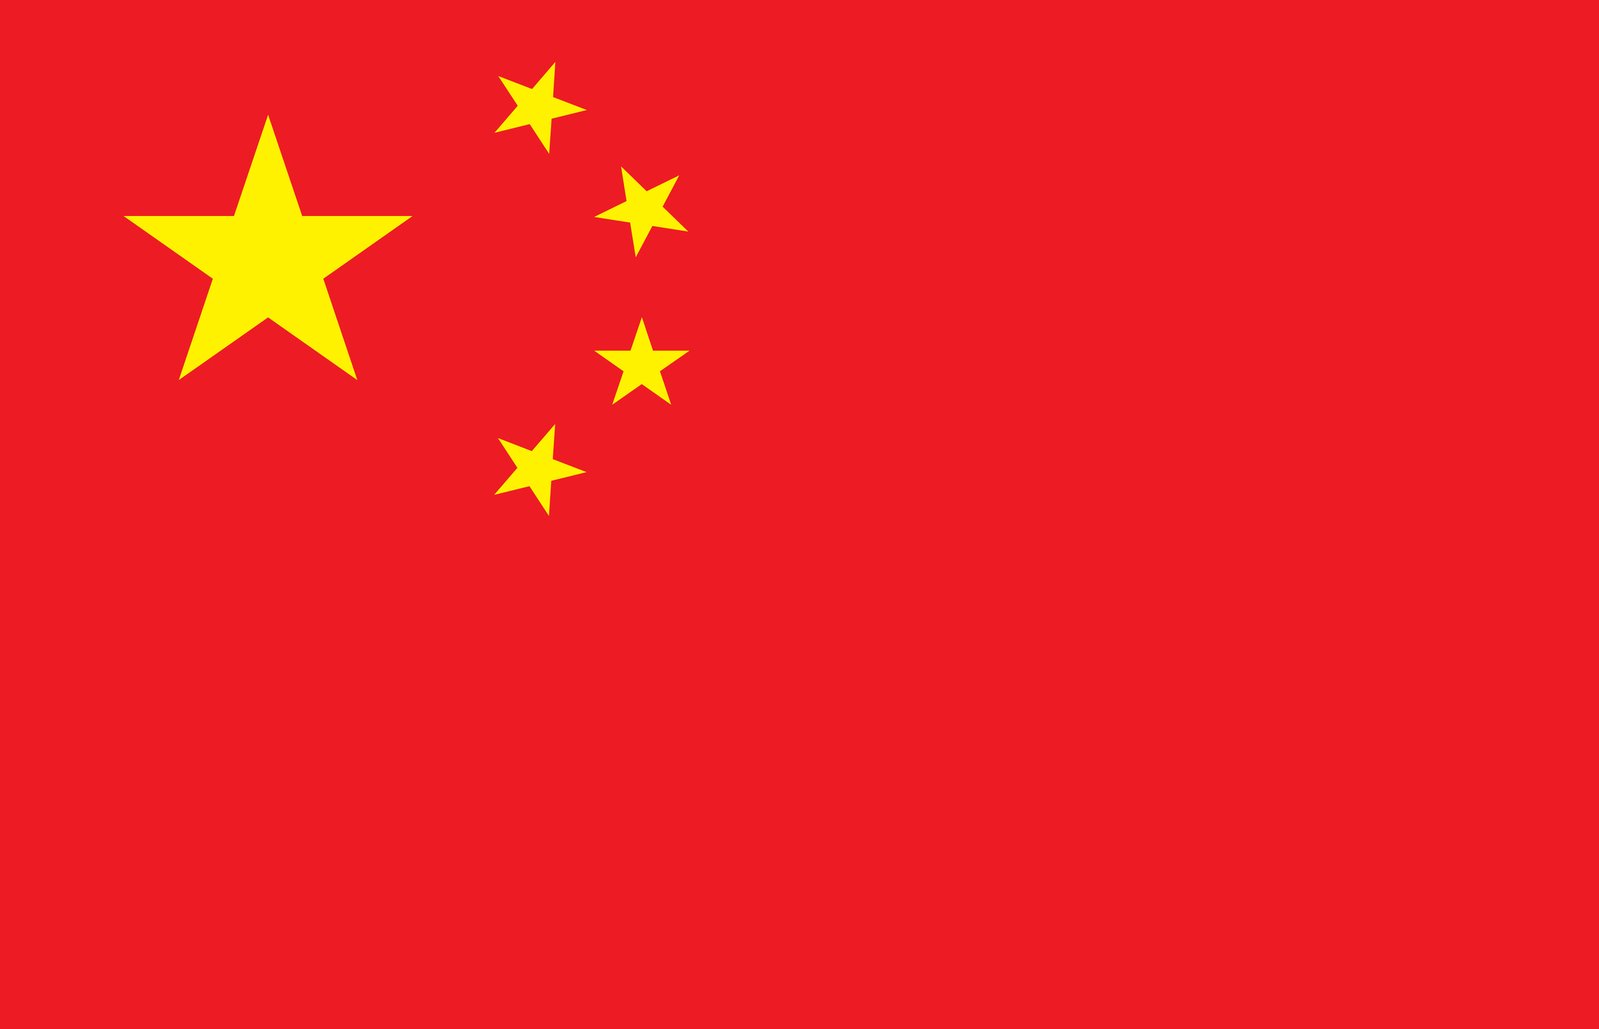 Kiinan lippu ilmainen valokuvalataus | Ilmaiset kuvat